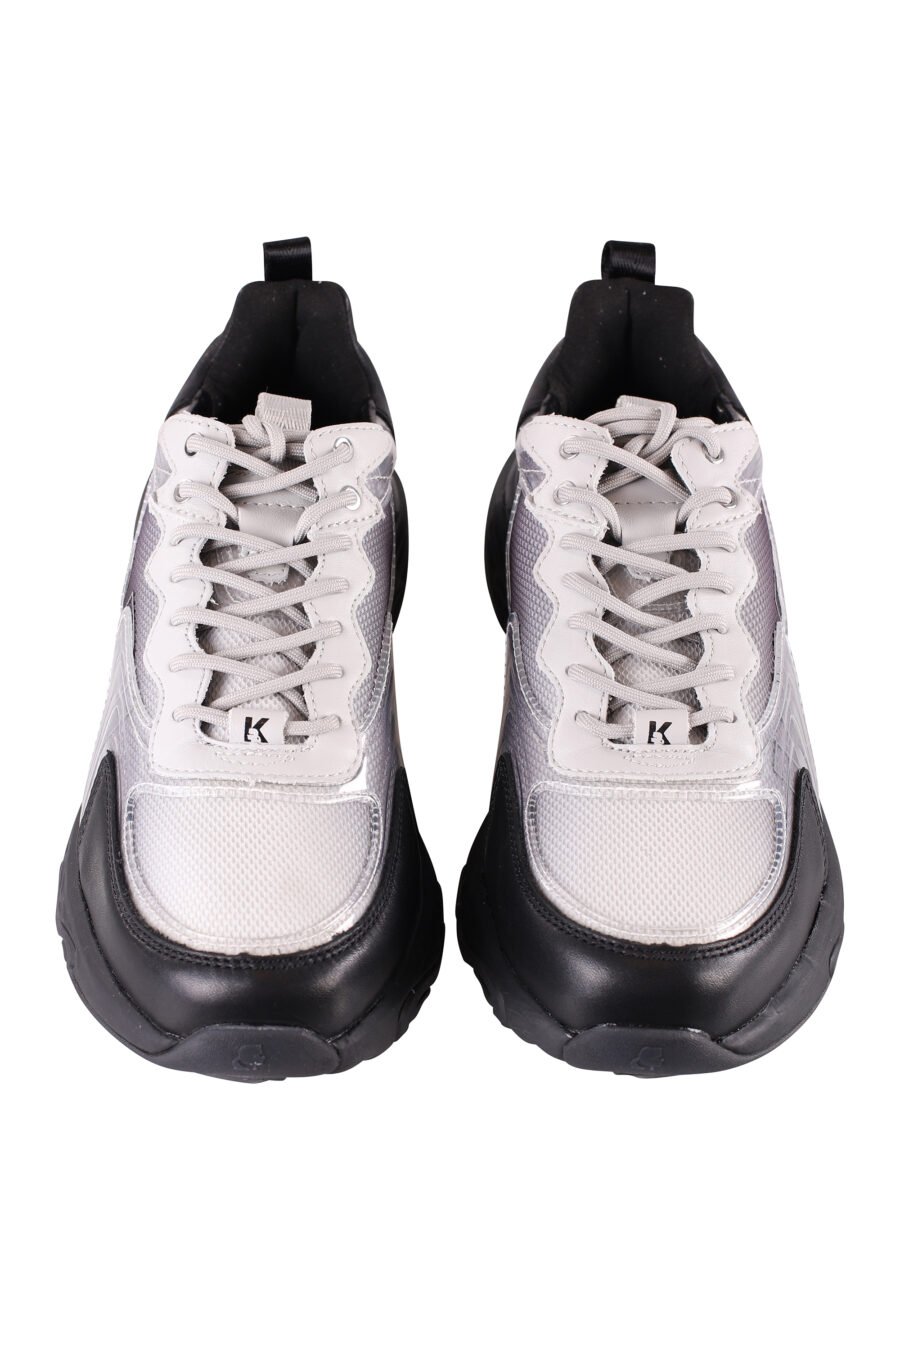 Zapatillas negras "blaze" con detalles blancos y transparentes - IMG 8500